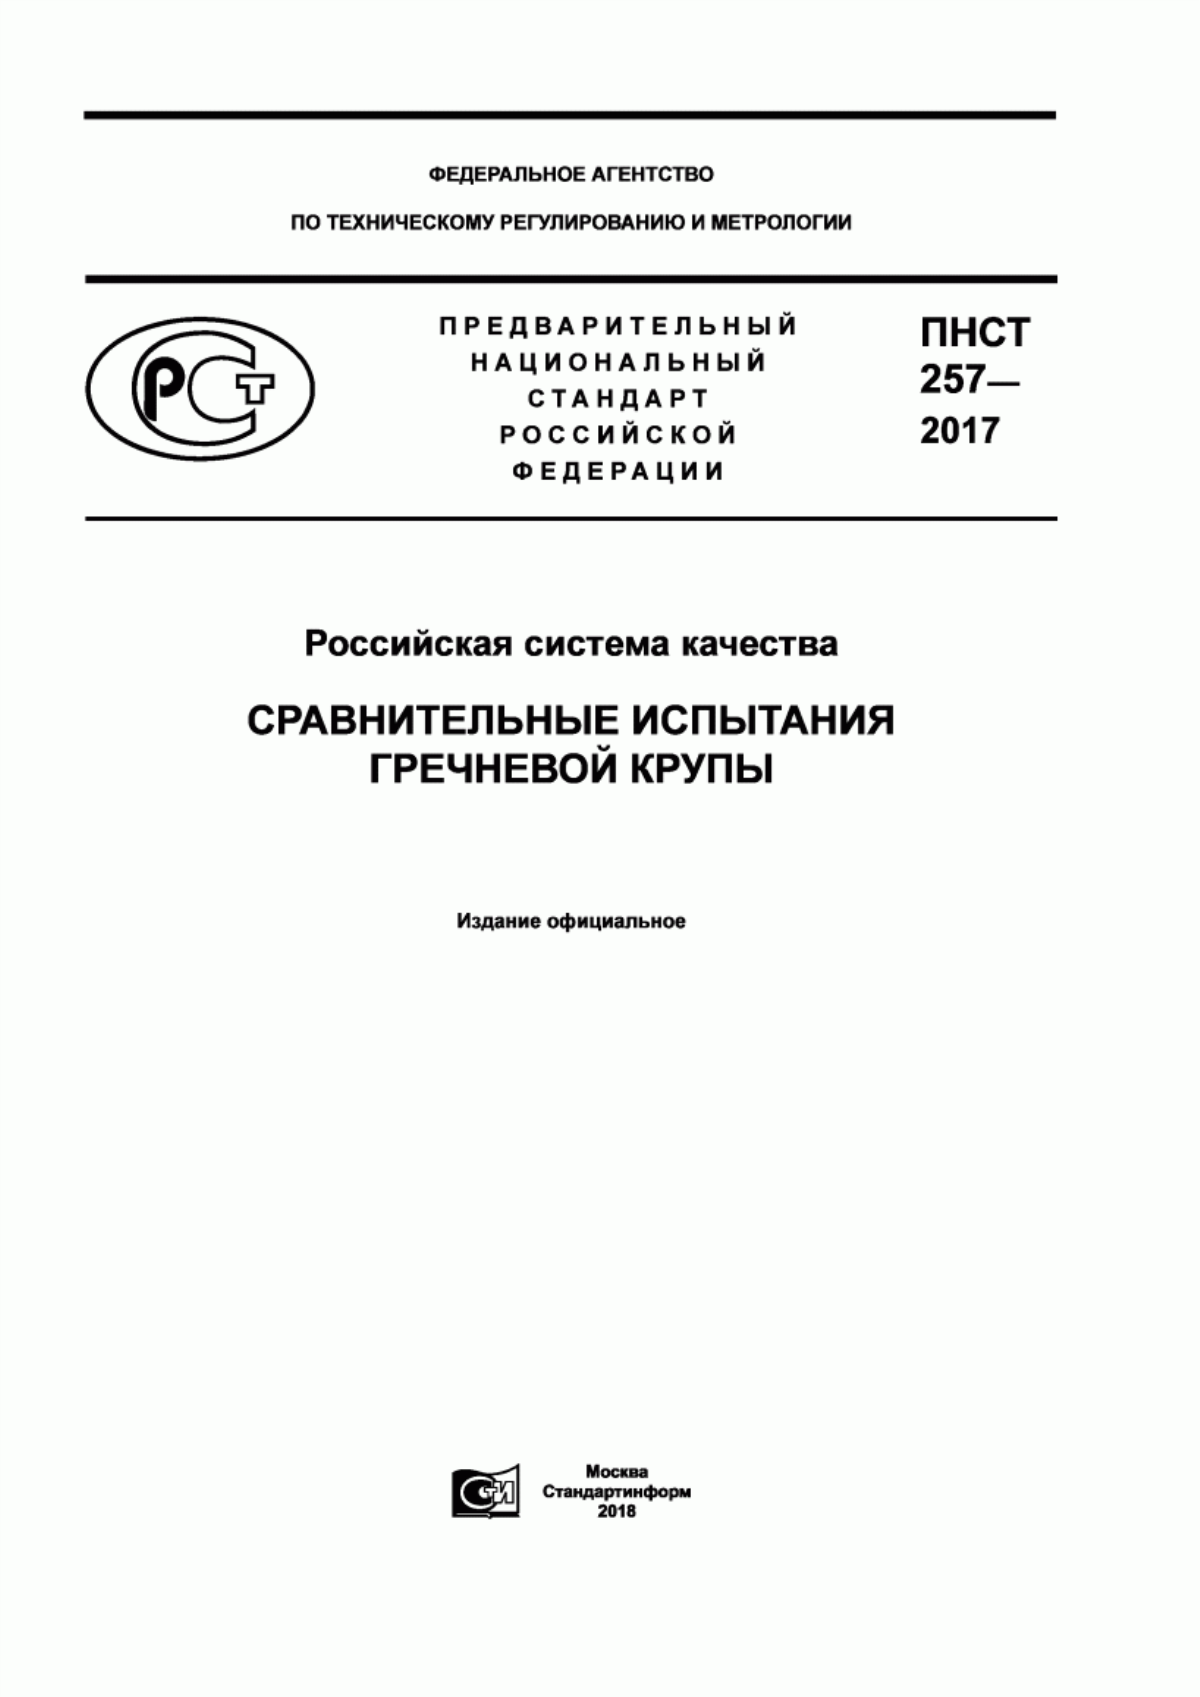 ПНСТ 257-2017 Российская система качества. Сравнительные испытания гречневой крупы